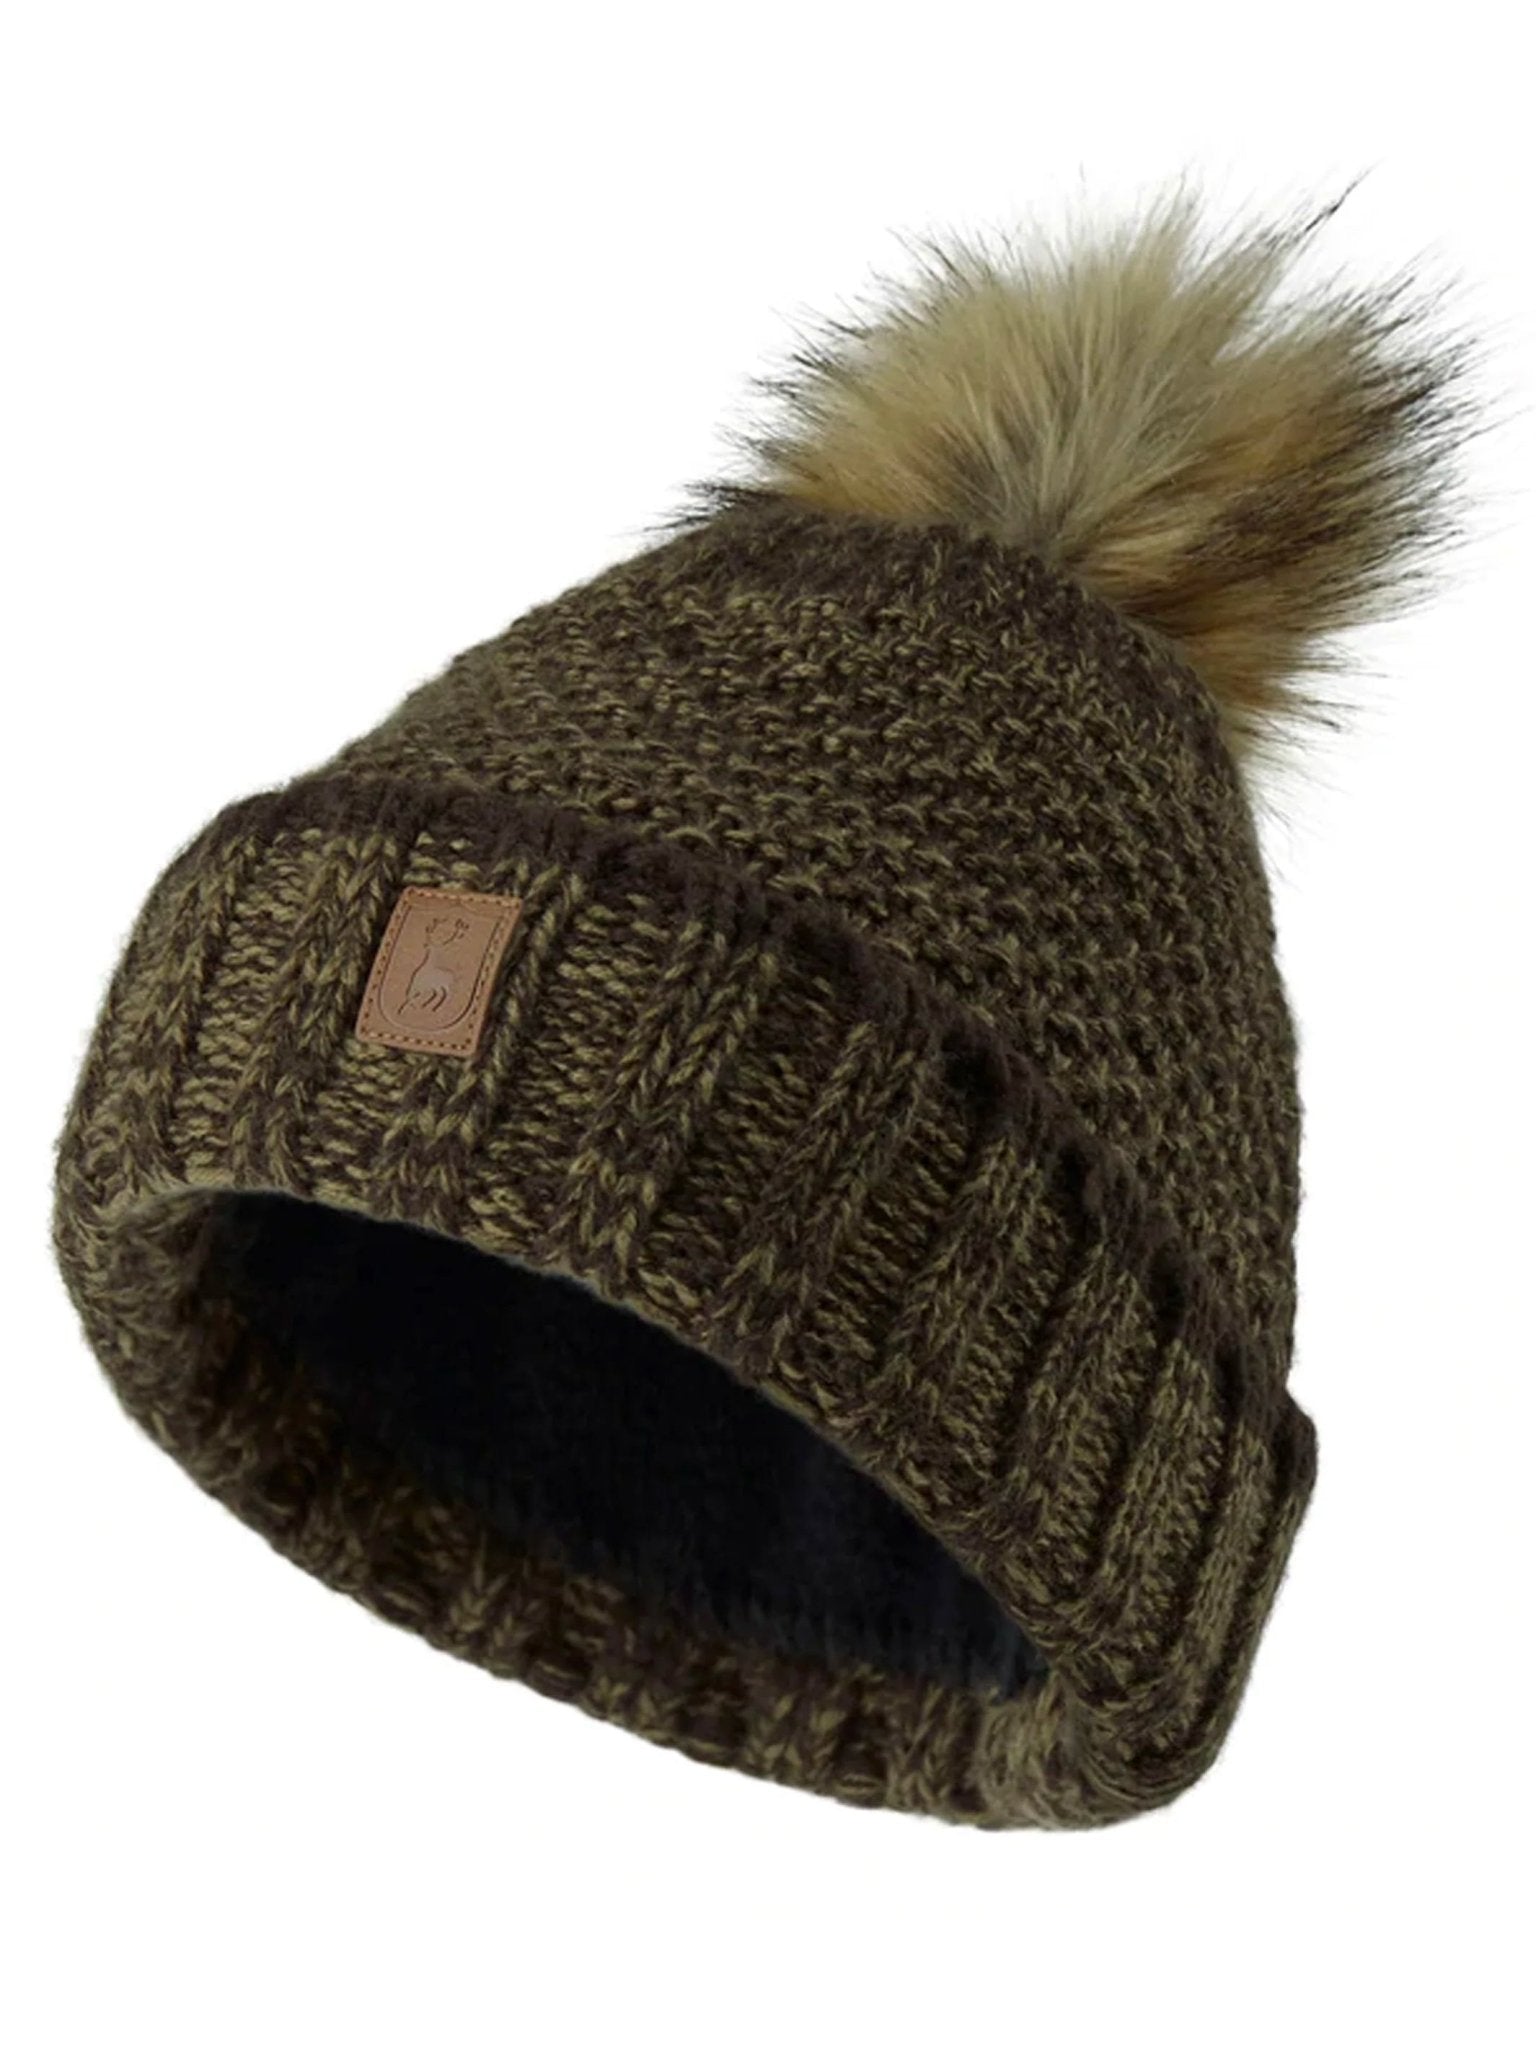 4elementsclothingDeerhunterDeerhunter - Ladies bobble hat knitted country HatLadies Headwear6486-376